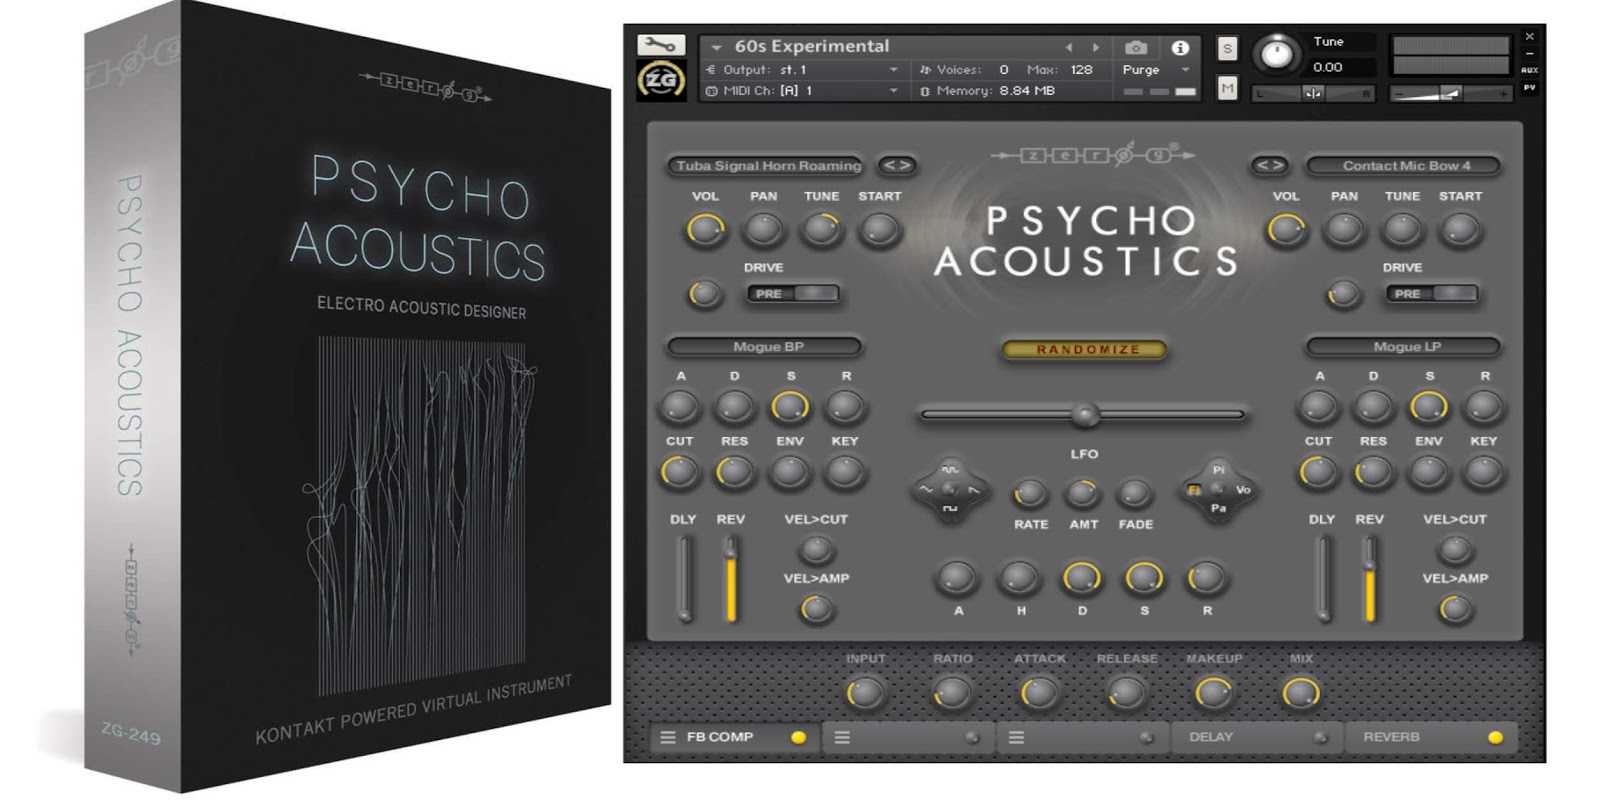 Zero-G – Psycho Acoustics (KONTAKT) Full